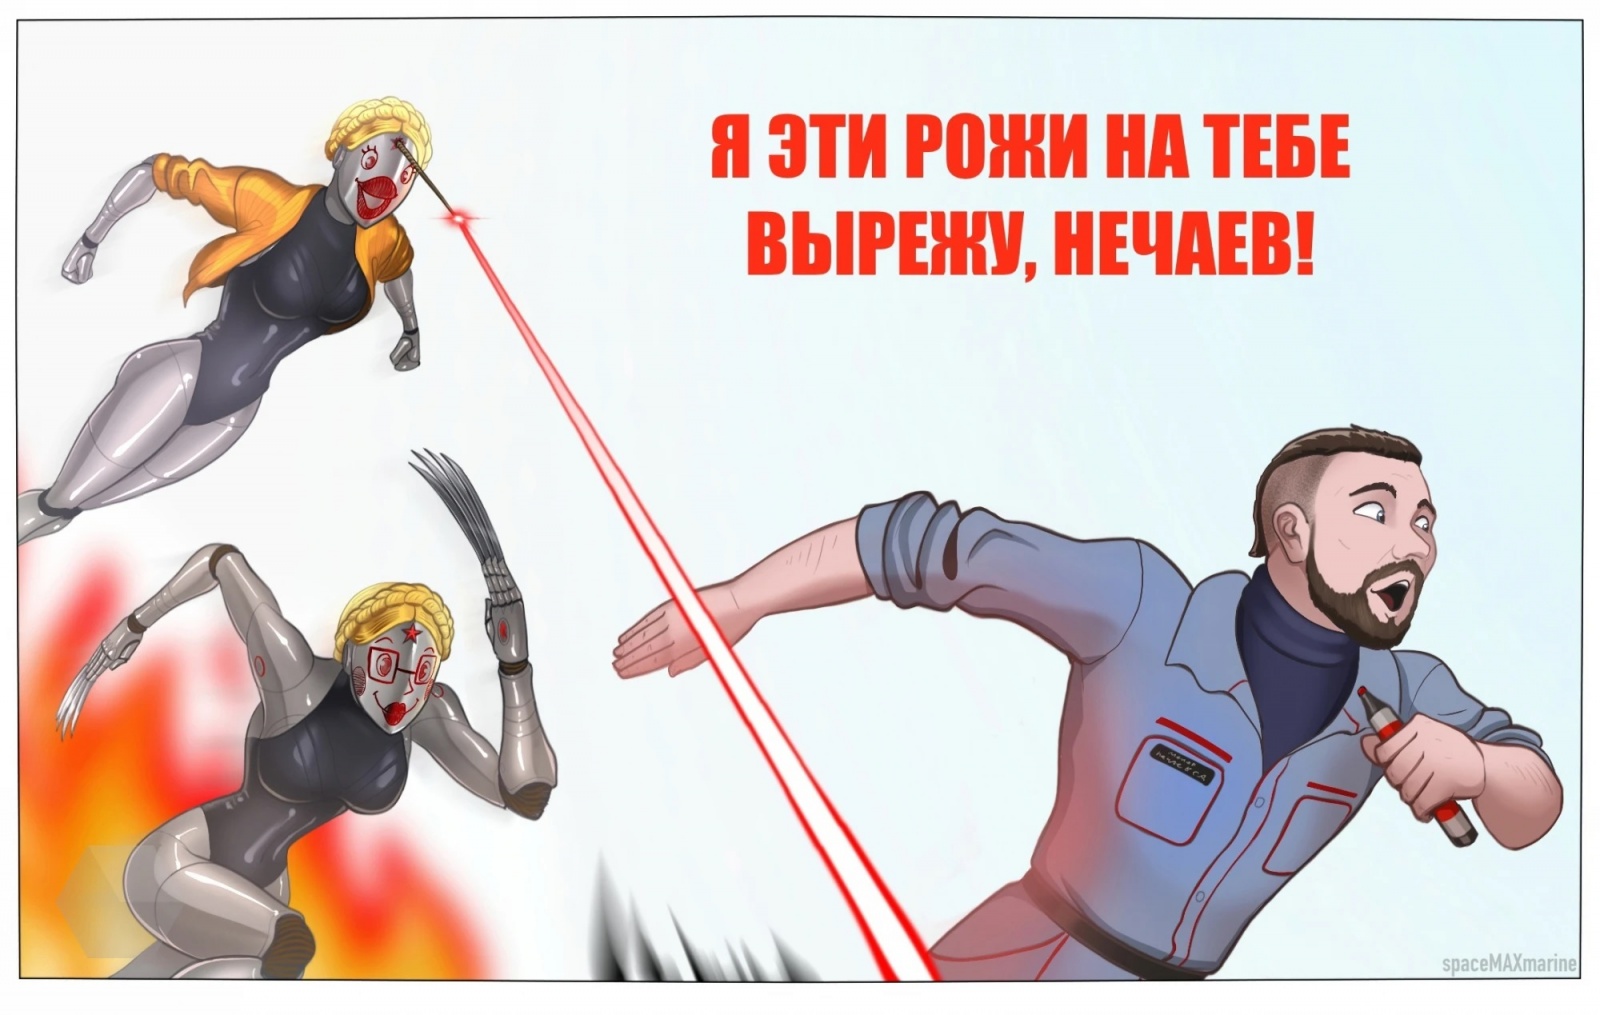 Главные мемы 2023 года: атомный советпанк, русы с ящерами, барбенгеймер и гусь-матерщинник - 3